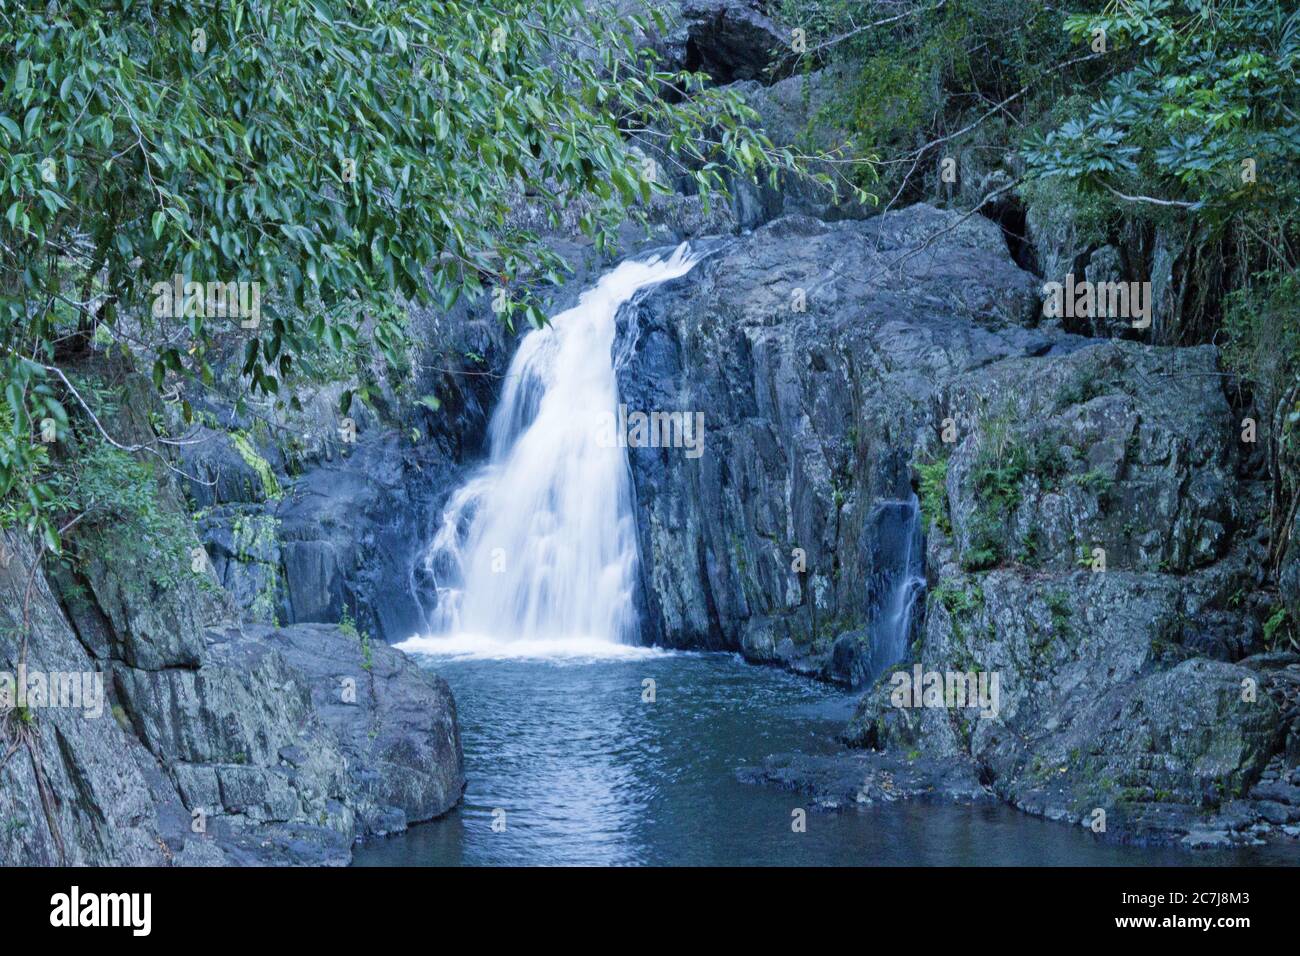 La cascade et le principal trou de baignade du quartier Crystal Cascades, dans la banlieue de Cairns, sont très populaires. Banque D'Images